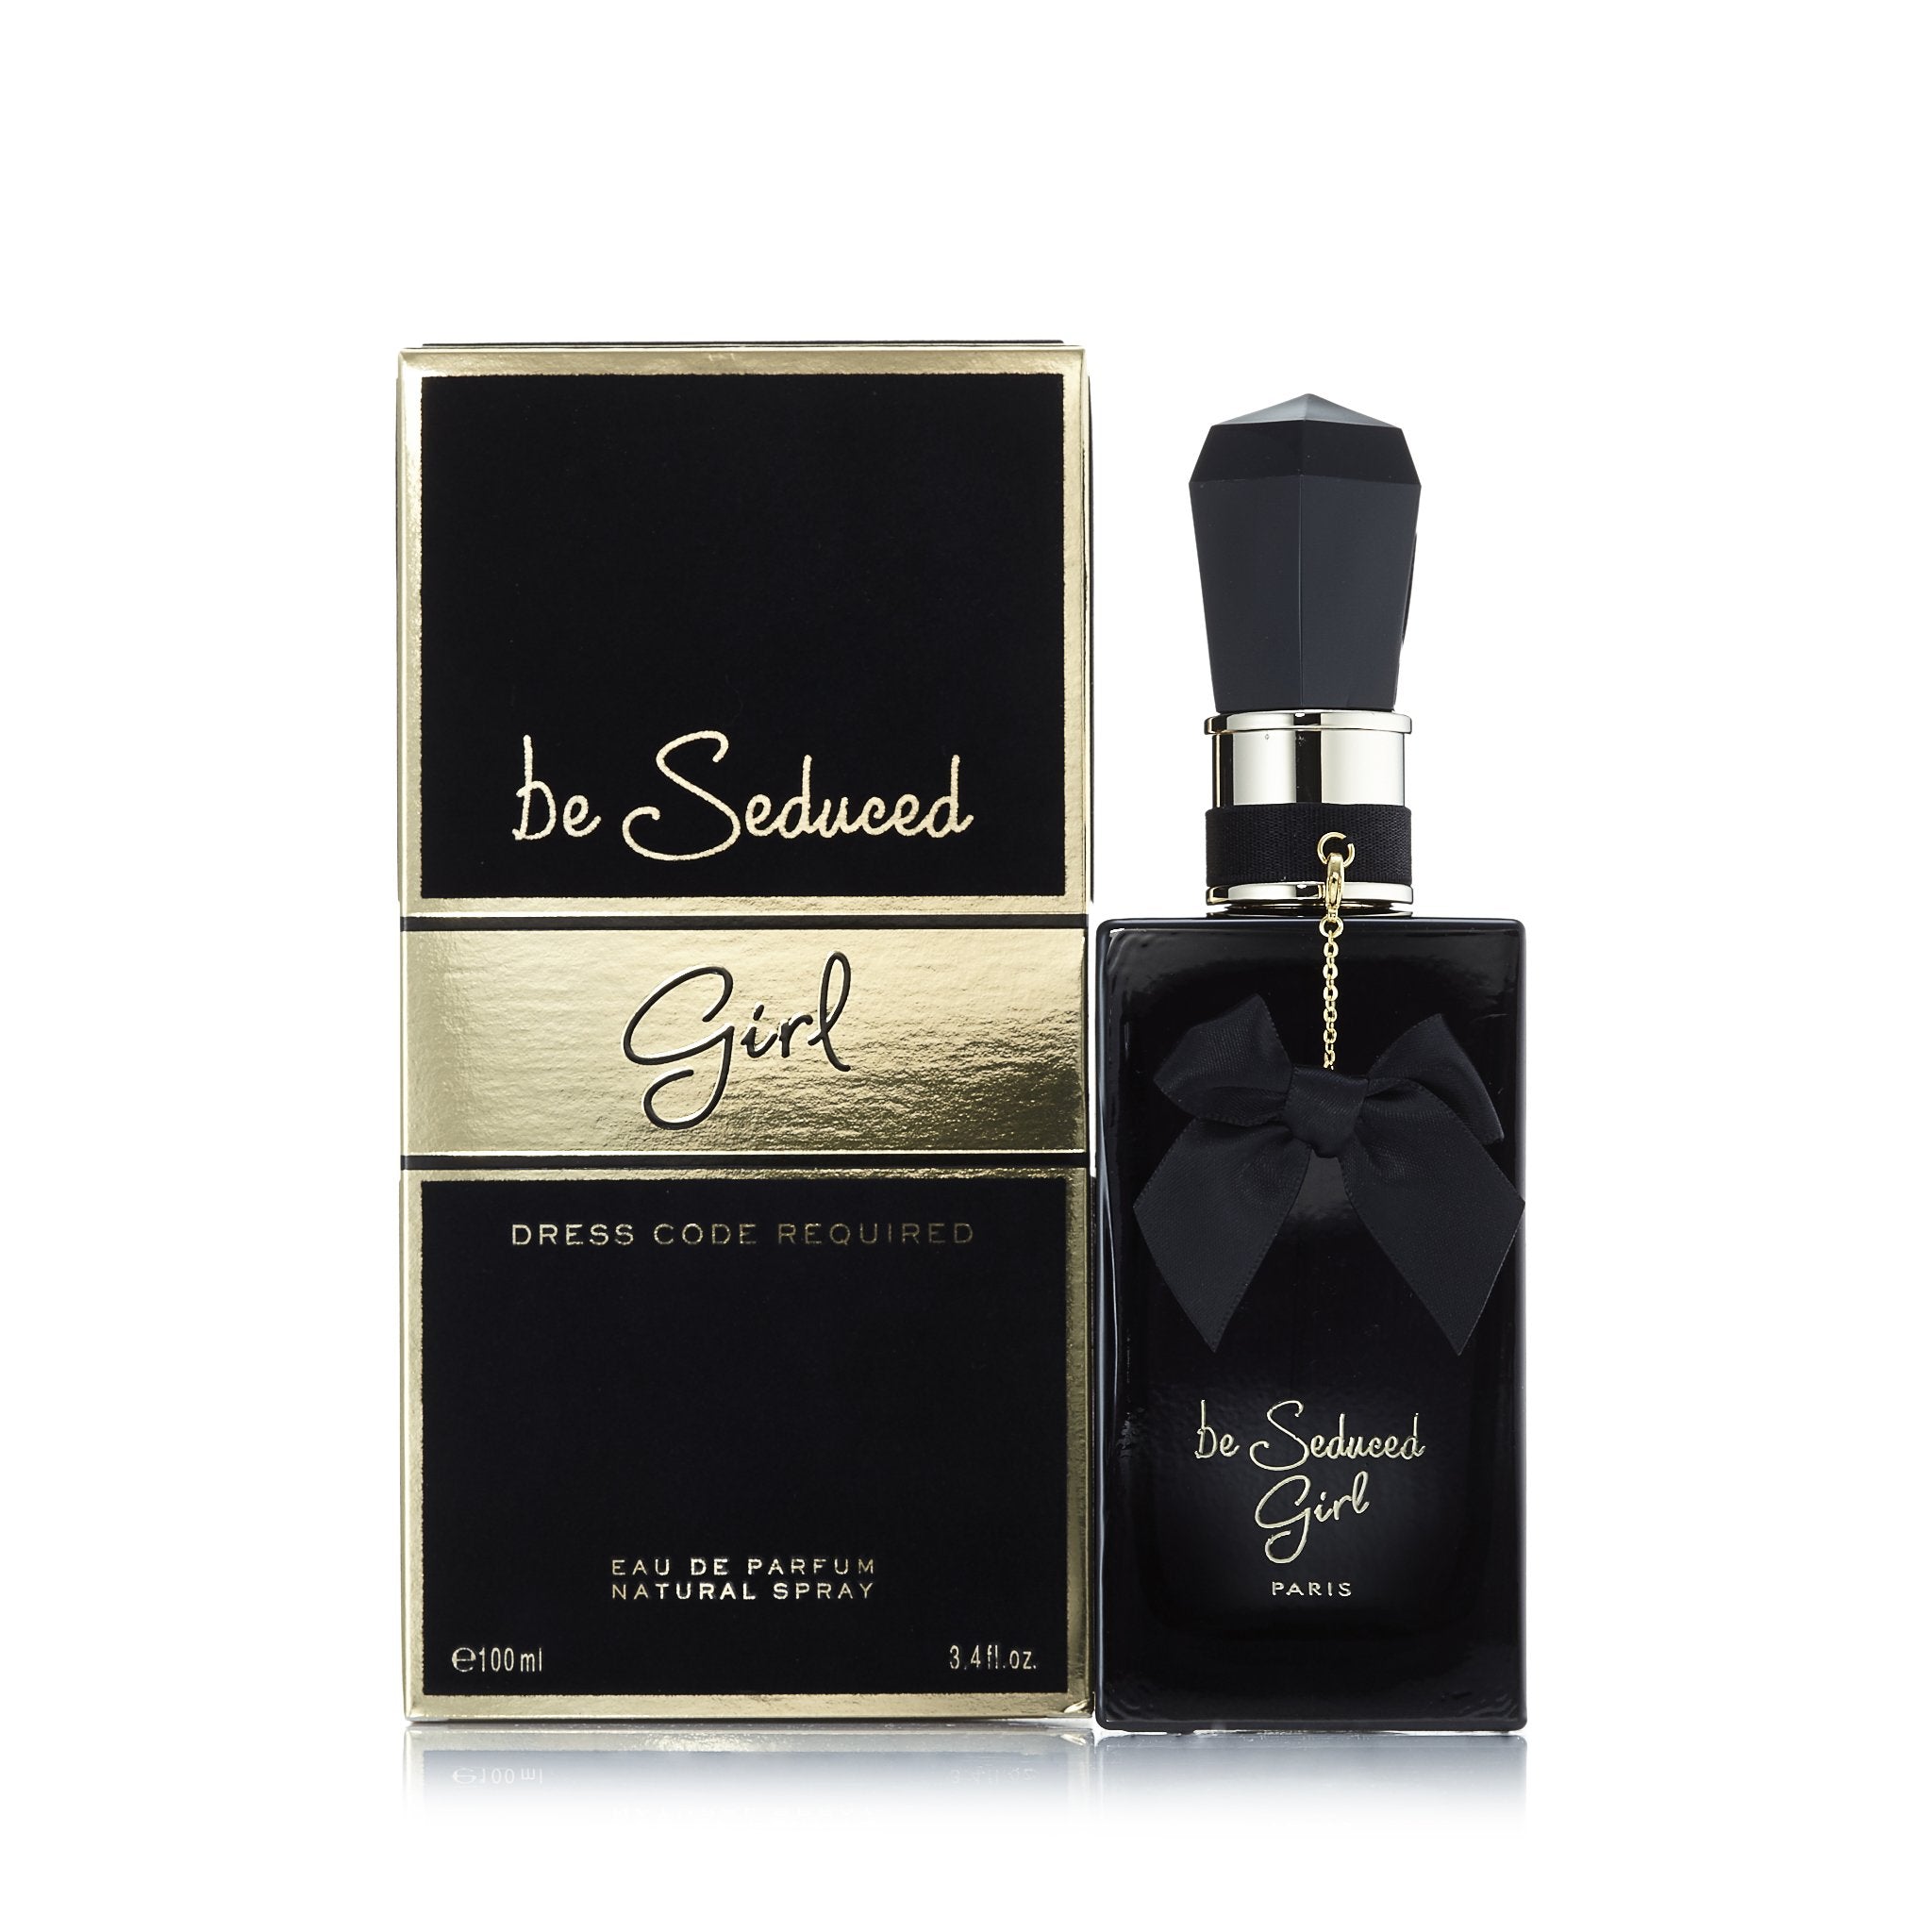 Dior Men's Sauvage Eau De Parfum Spray - 3.4 fl oz bottle